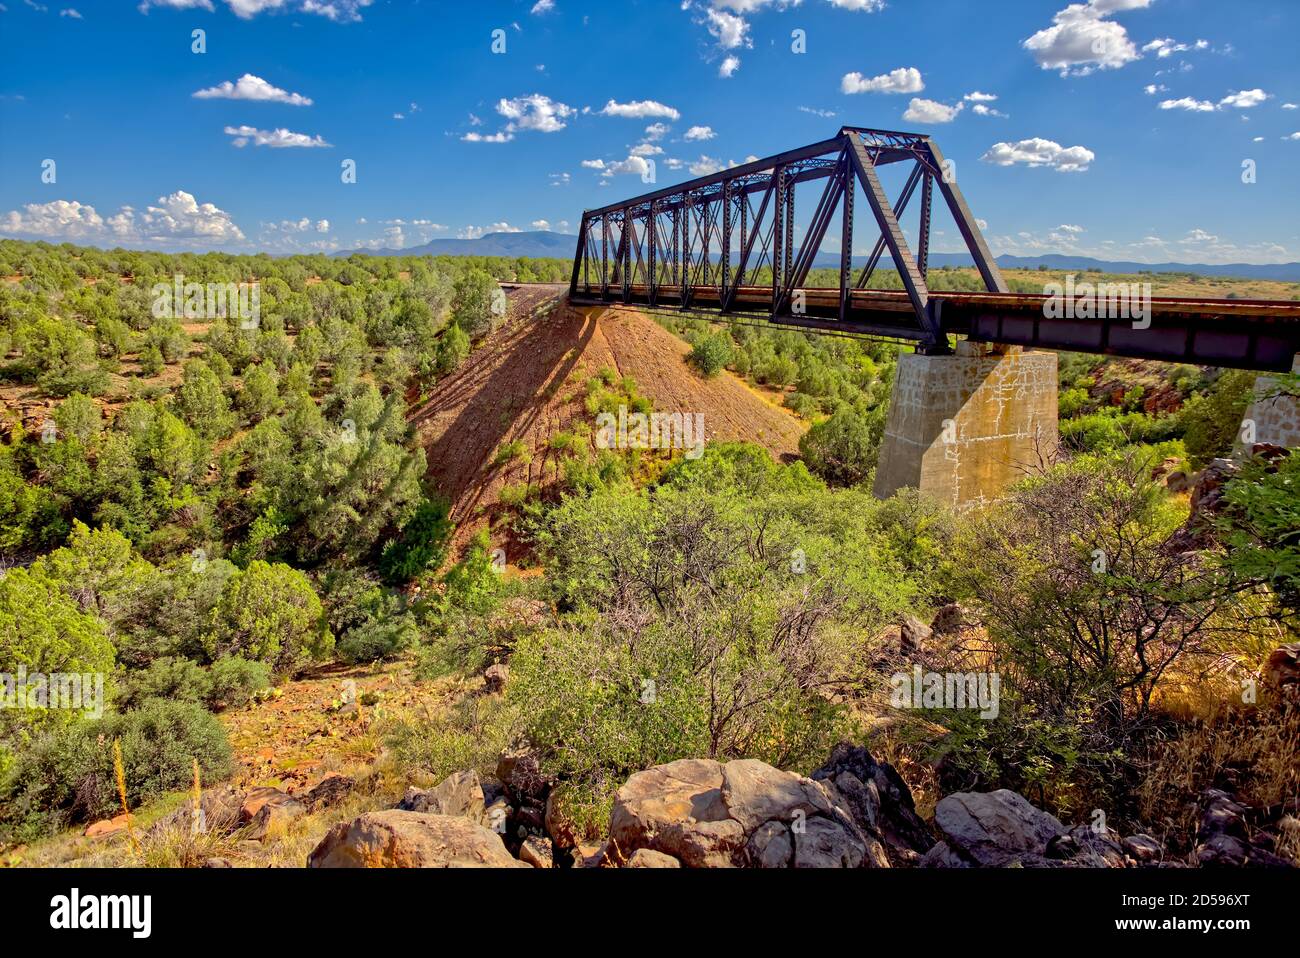 Chemin de fer Trestle Bridge au-dessus de Bear Canyon avec la montagne Mingus au loin, Perkinsville, Arizona, États-Unis Banque D'Images